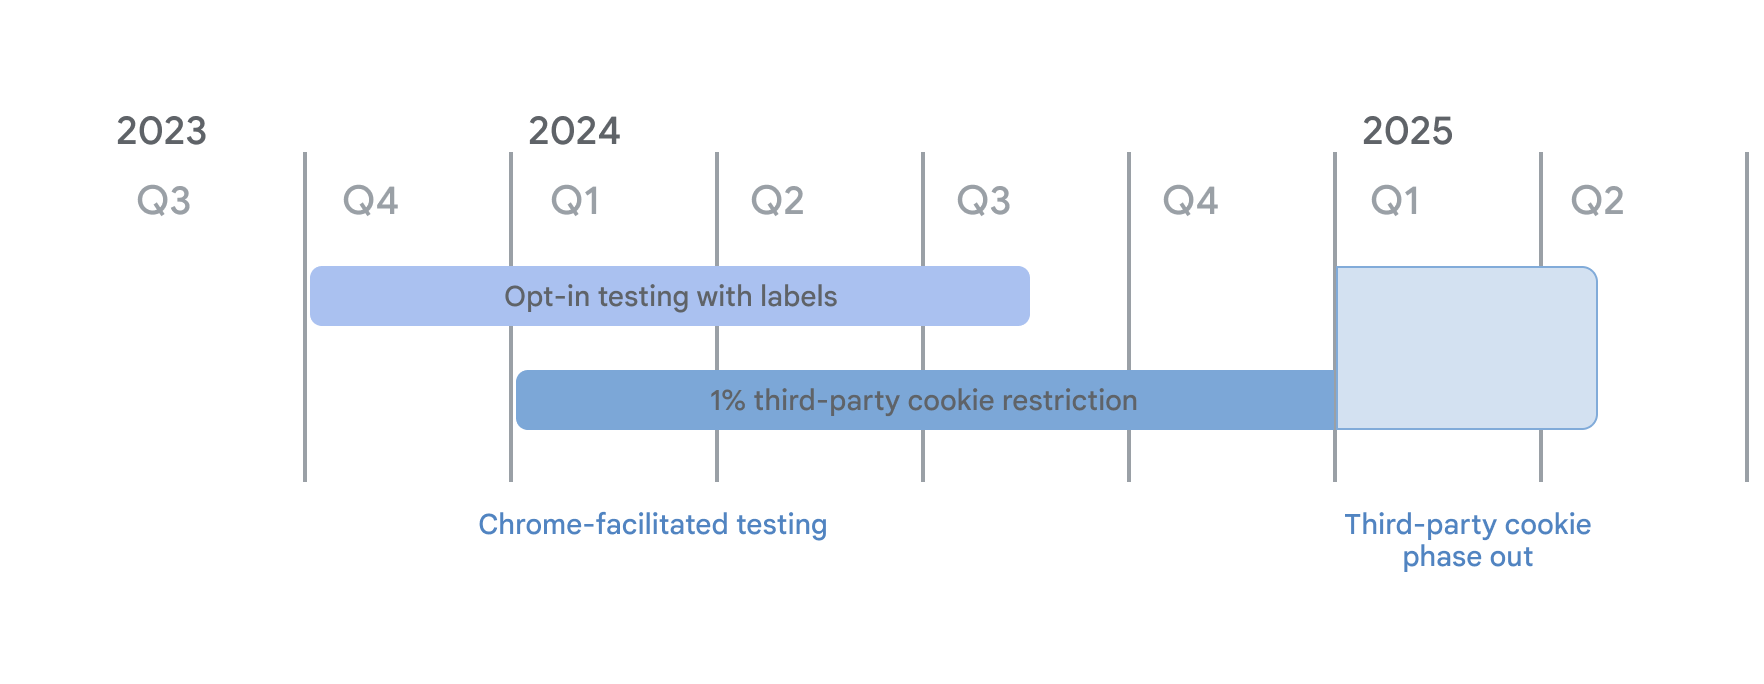 ציר זמן להשבתה של קובצי cookie של צד שלישי. כחלק מהבדיקות שמתבצעת באמצעות Chrome, החל מ-4 בינואר 2024 התחלנו לבדוק בקשות הצטרפות עם מצב תוויות במהלך הרבעון הרביעי של 2023, וההגבלות שחלות על 1% ל-3PC. שניהם ימשיכו עד הרבעון הראשון של 2025, כשיתחיל הסגירה ההדרגתית של קובצי ה-cookie של צד שלישי.